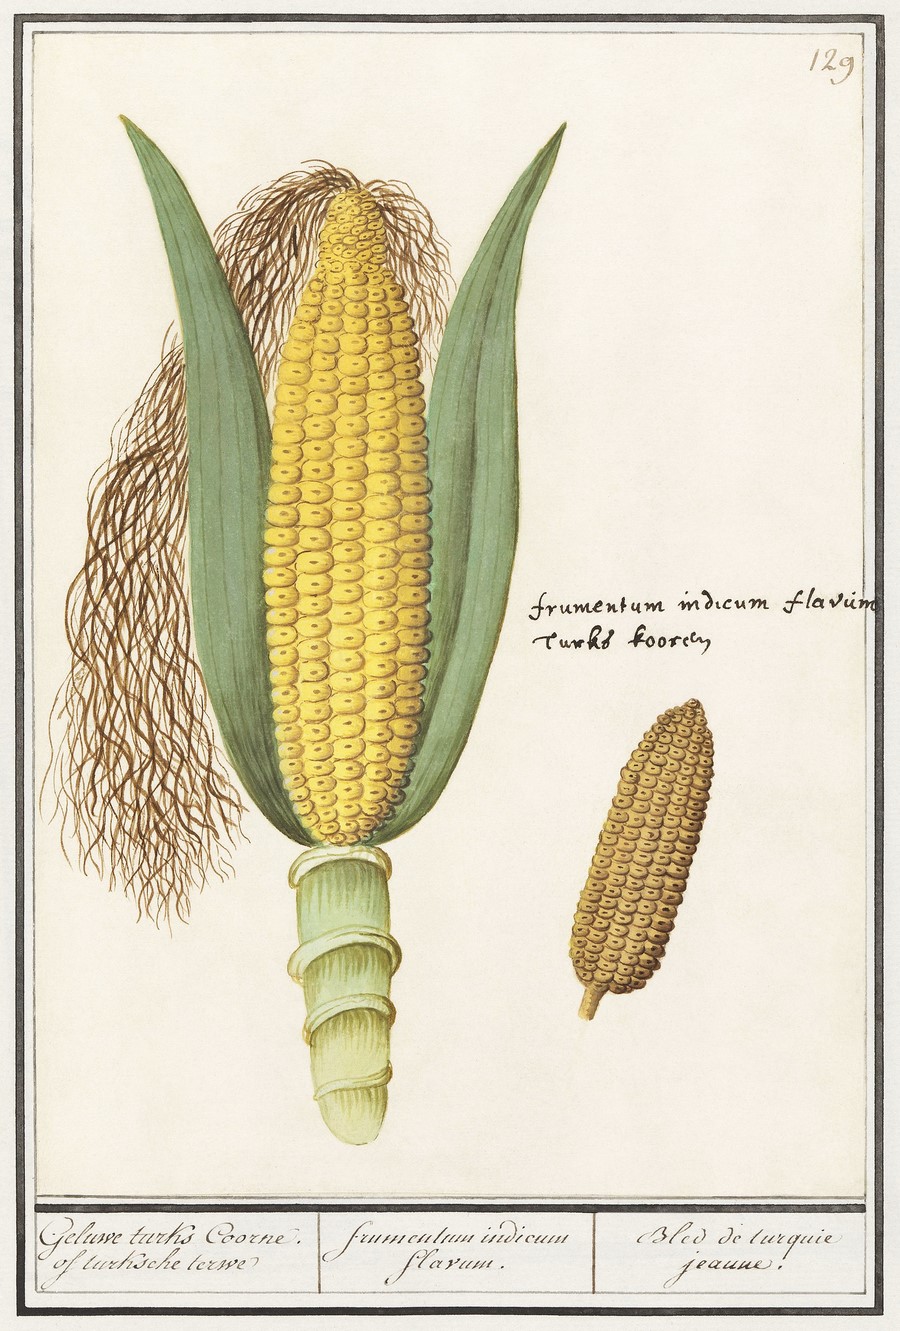 ilustraciones botánica de maíz